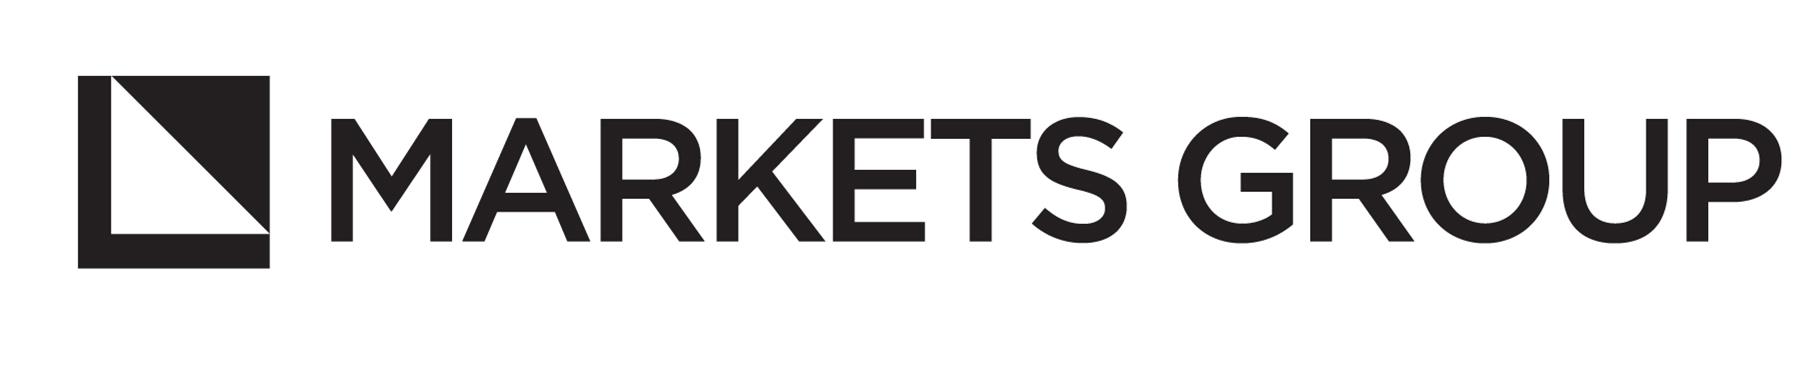 marketsgroup Logo